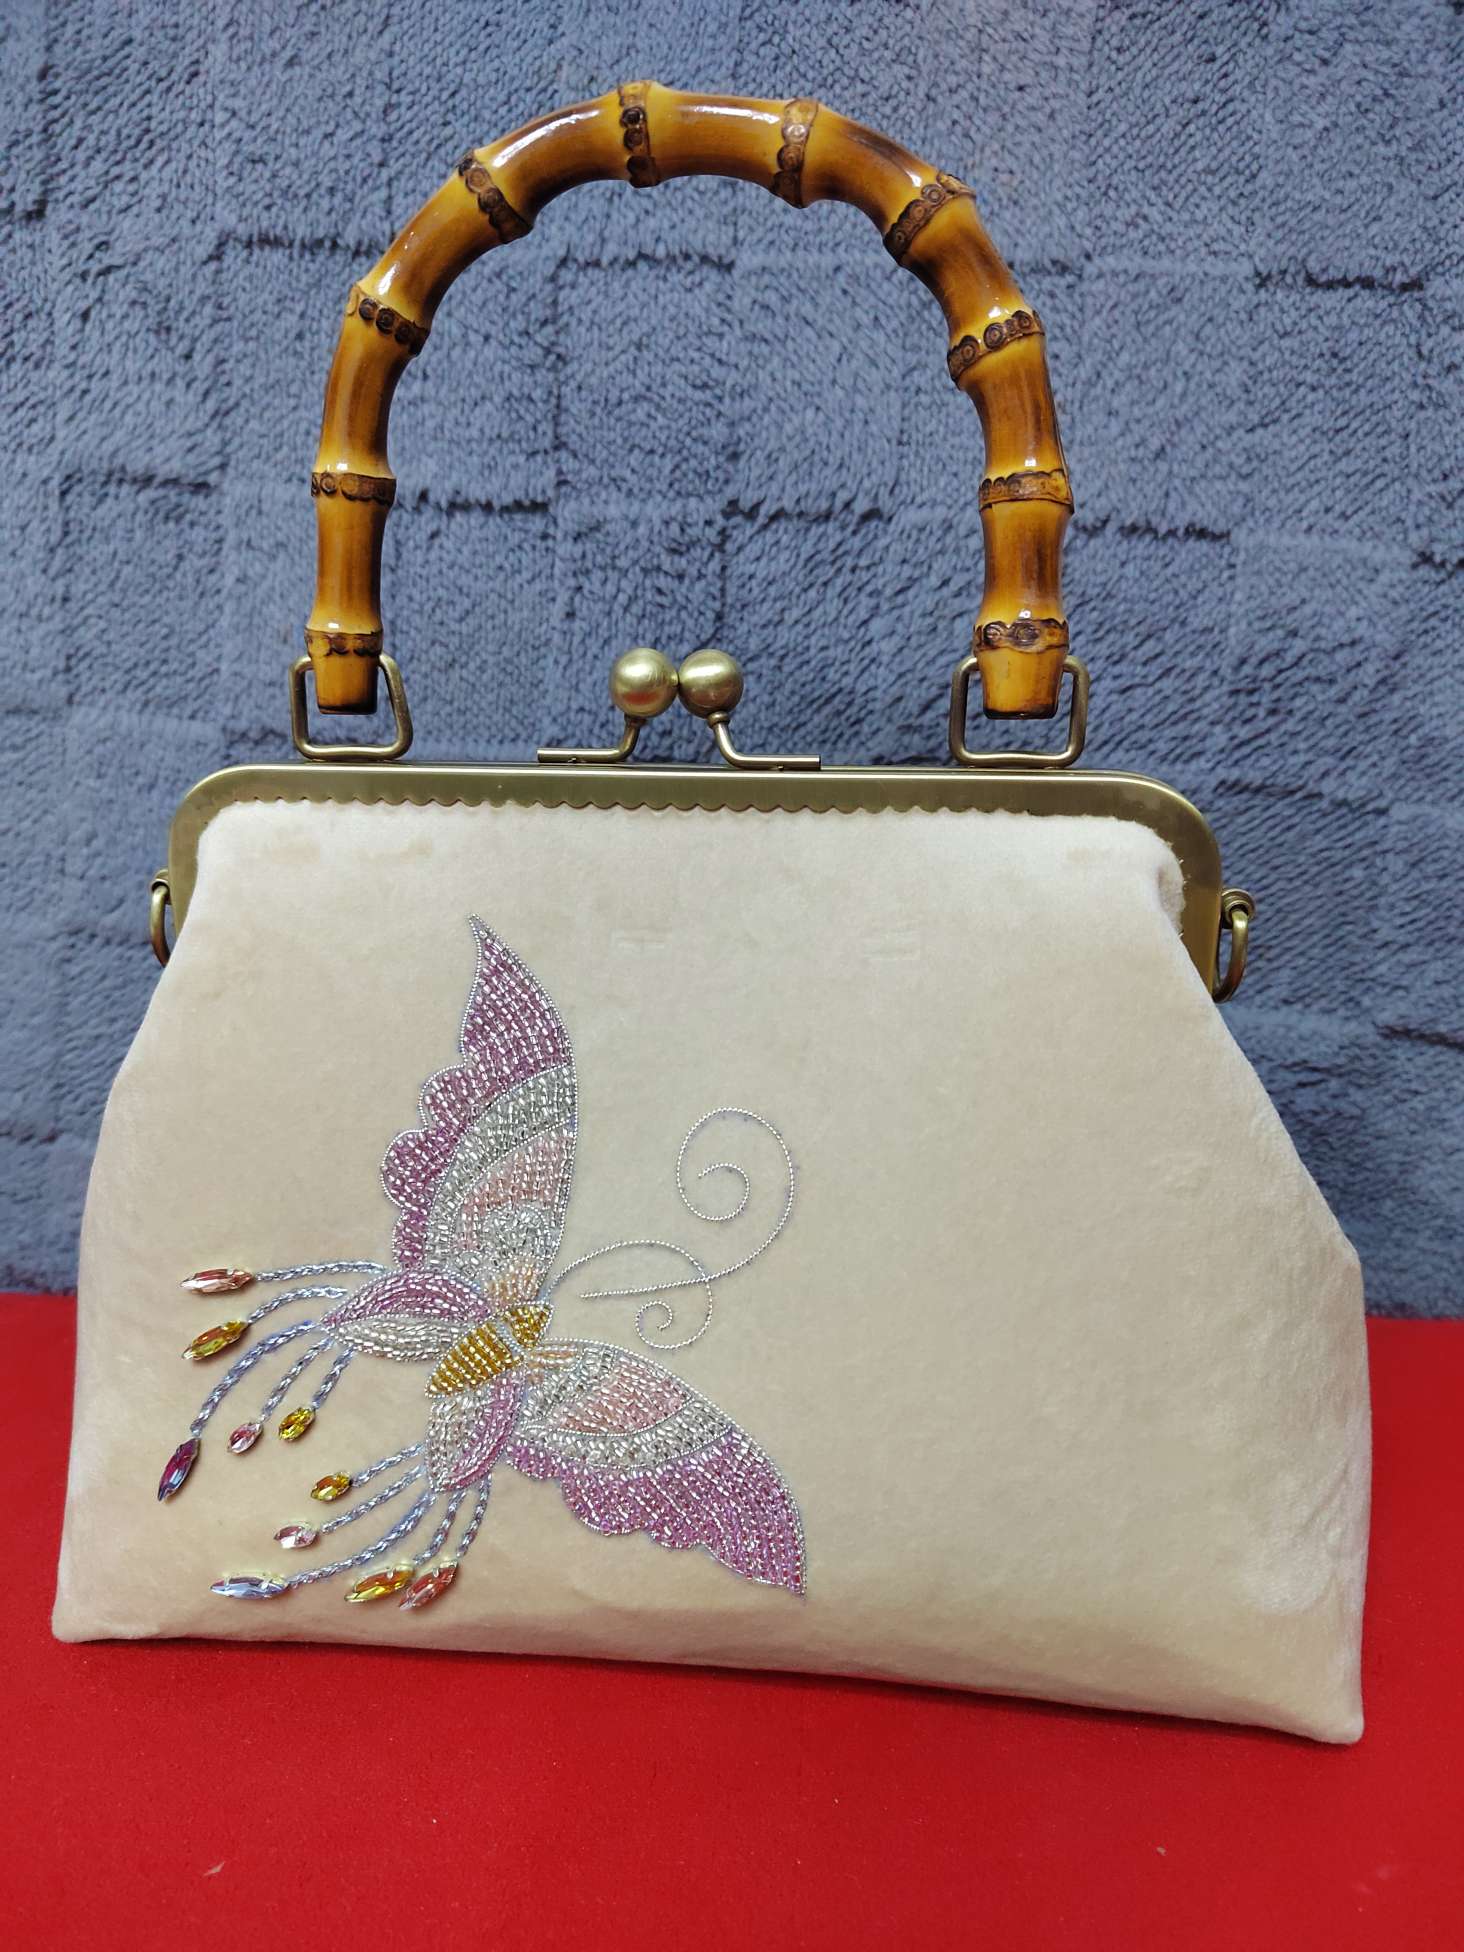 一款原创的珠绣蝴蝶纹手提包